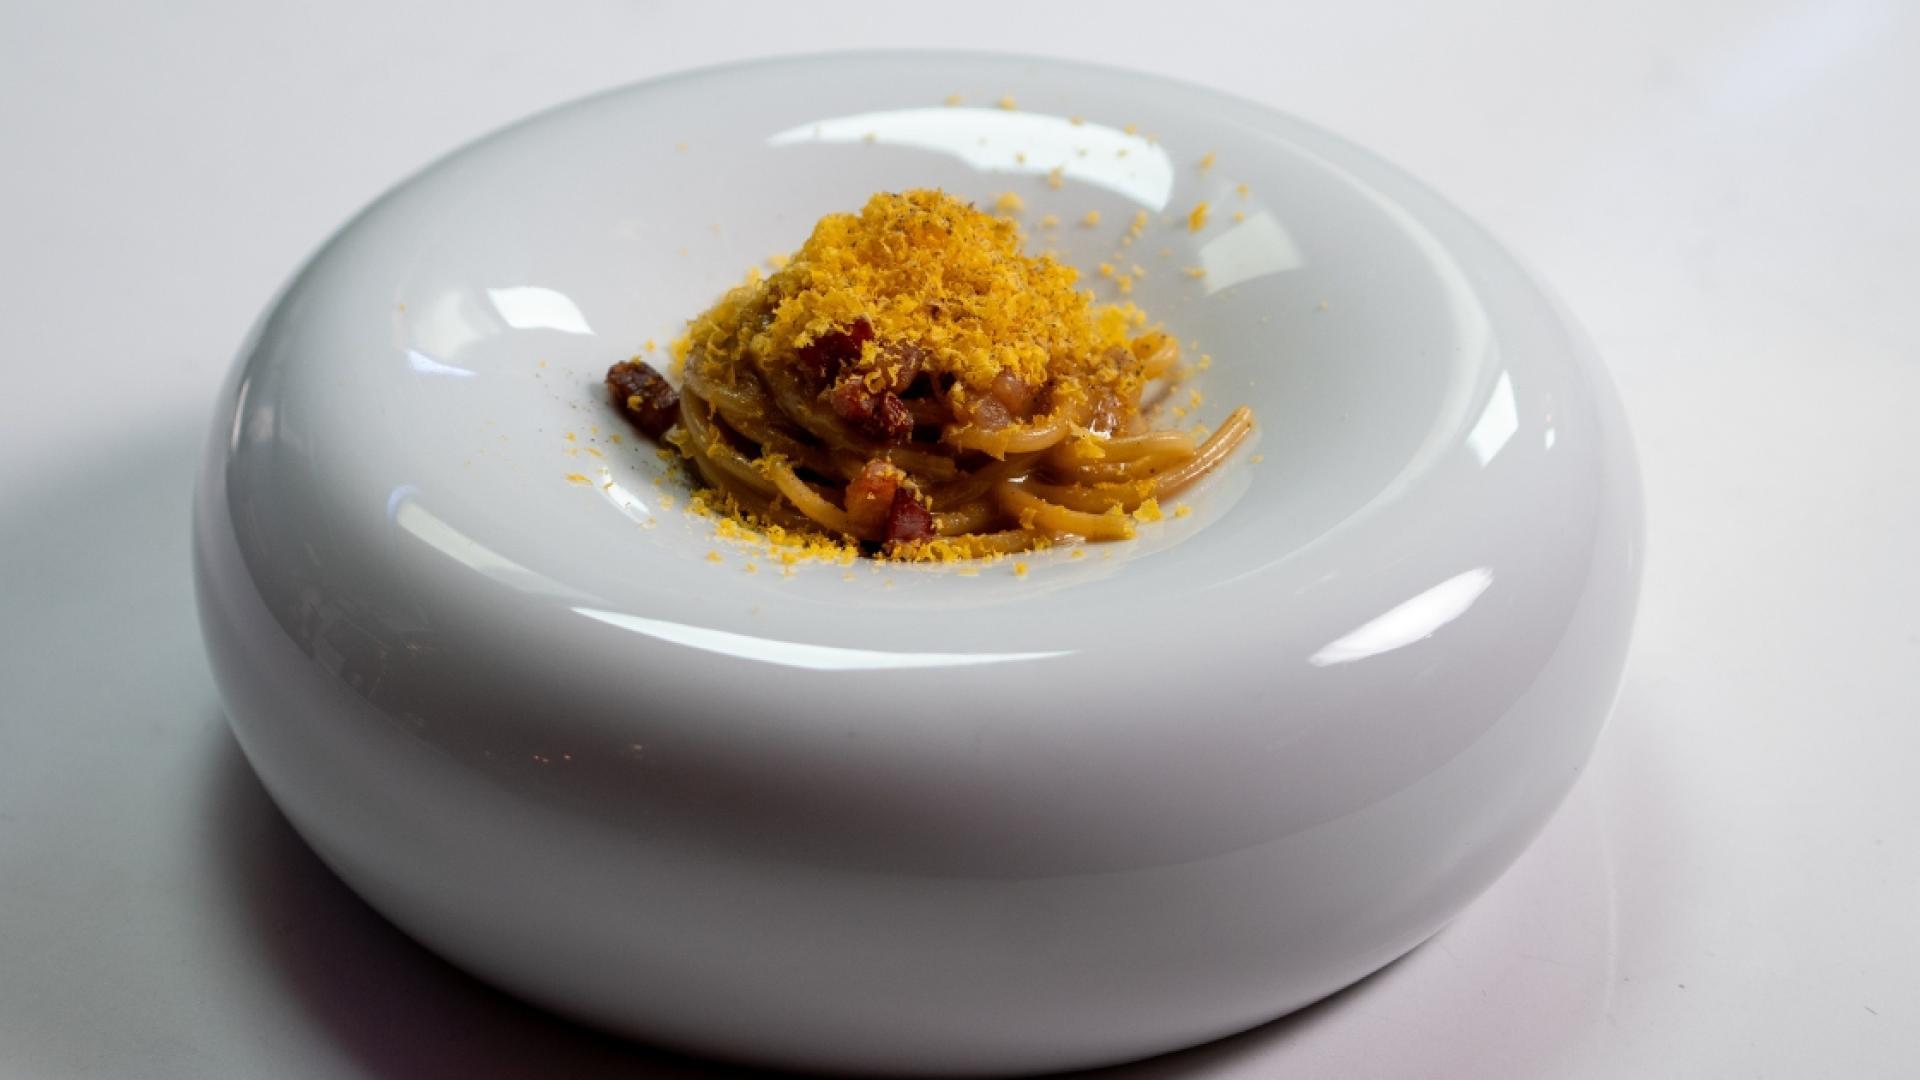 la receta de carbonara del chef gianni pinto que desafía a los más puristas: jugo de carne y panceta en lugar de guanciale